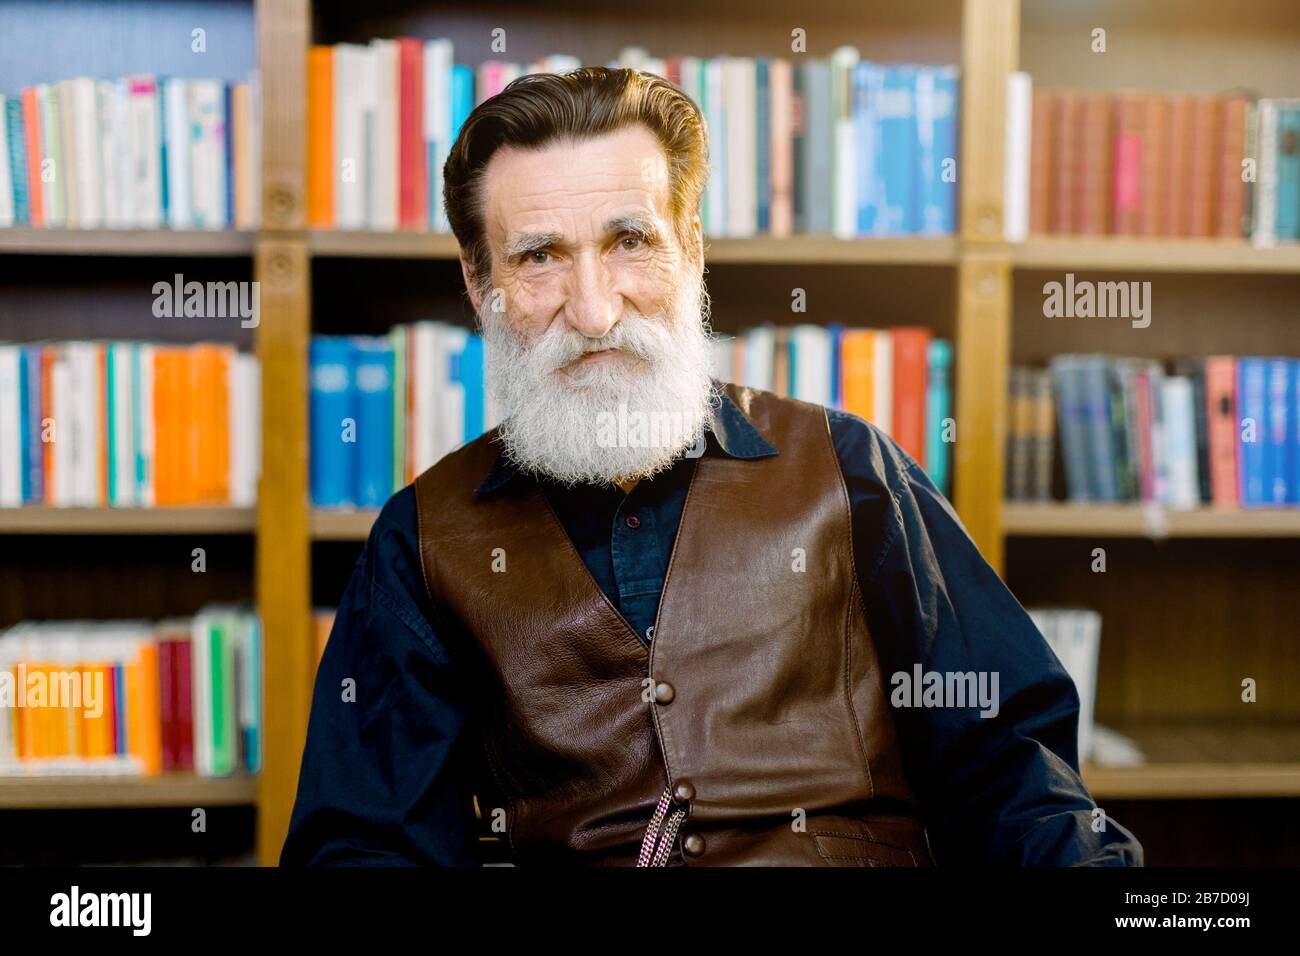 Ritratto di anziano barbuto uomo, bibliotecario o professore accademico, seduto sullo sfondo di librerie e scaffali in biblioteca o libro negozio di mercato Foto Stock